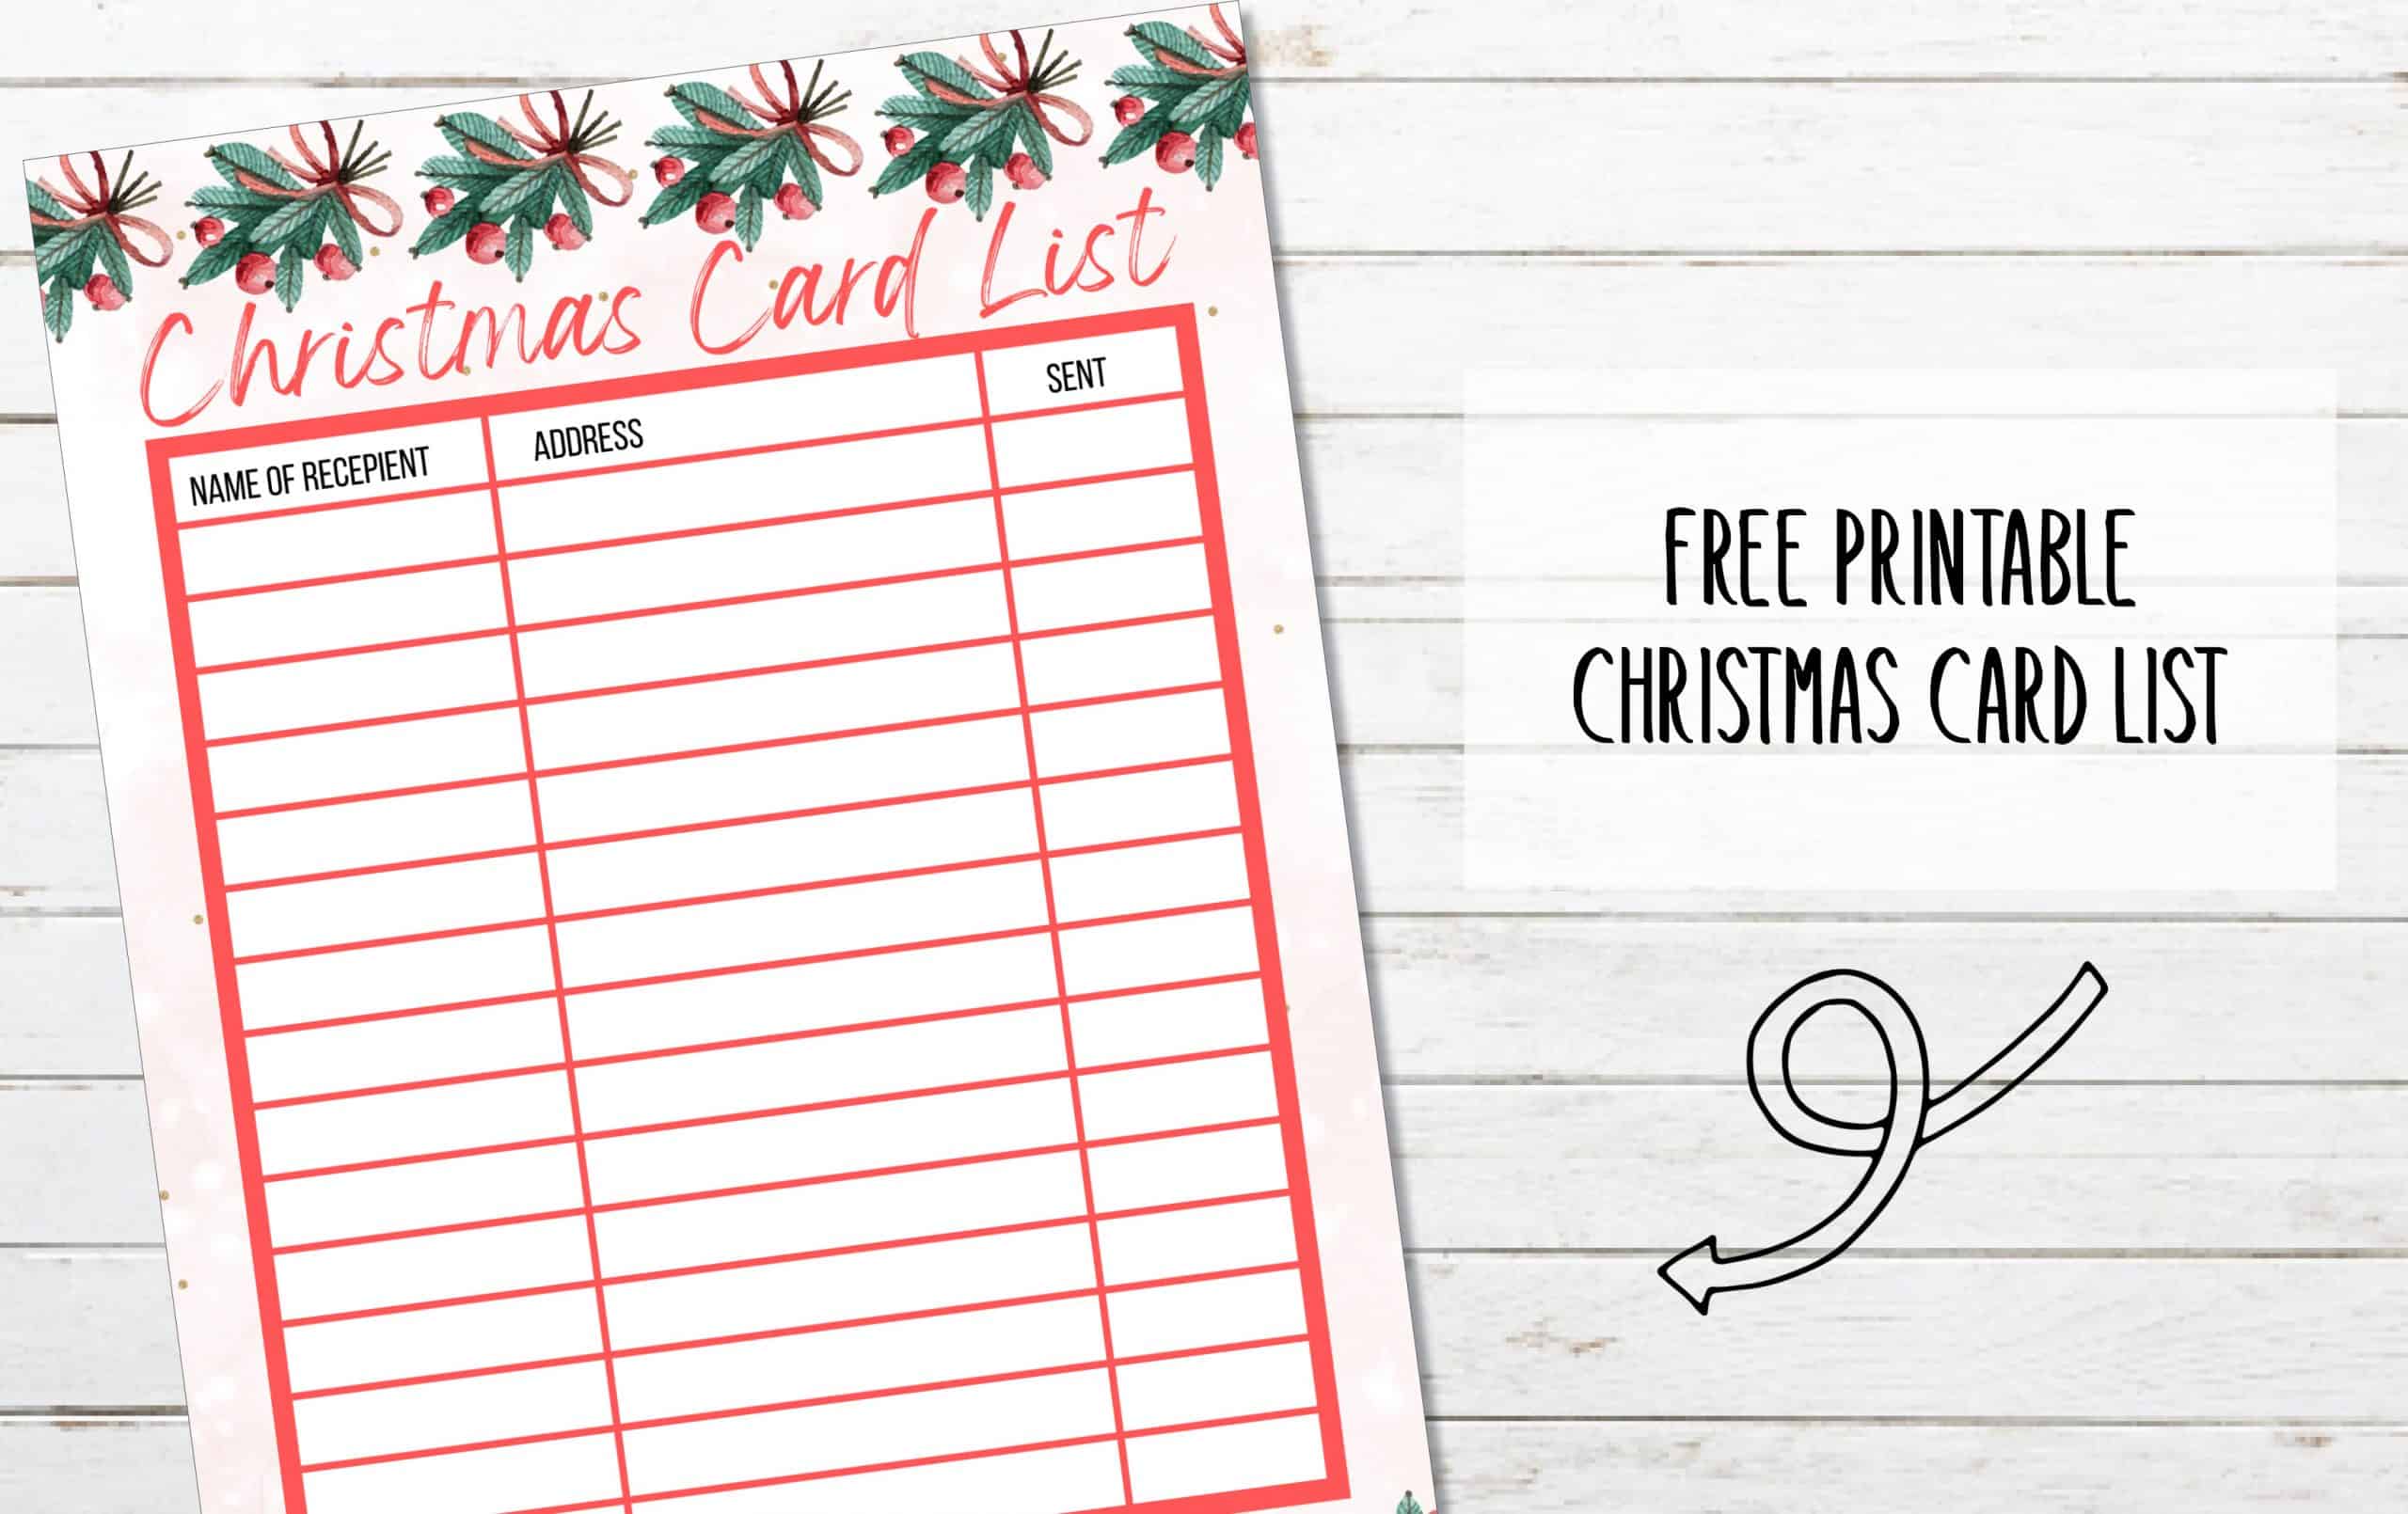 FREE Printable Christmas Card List